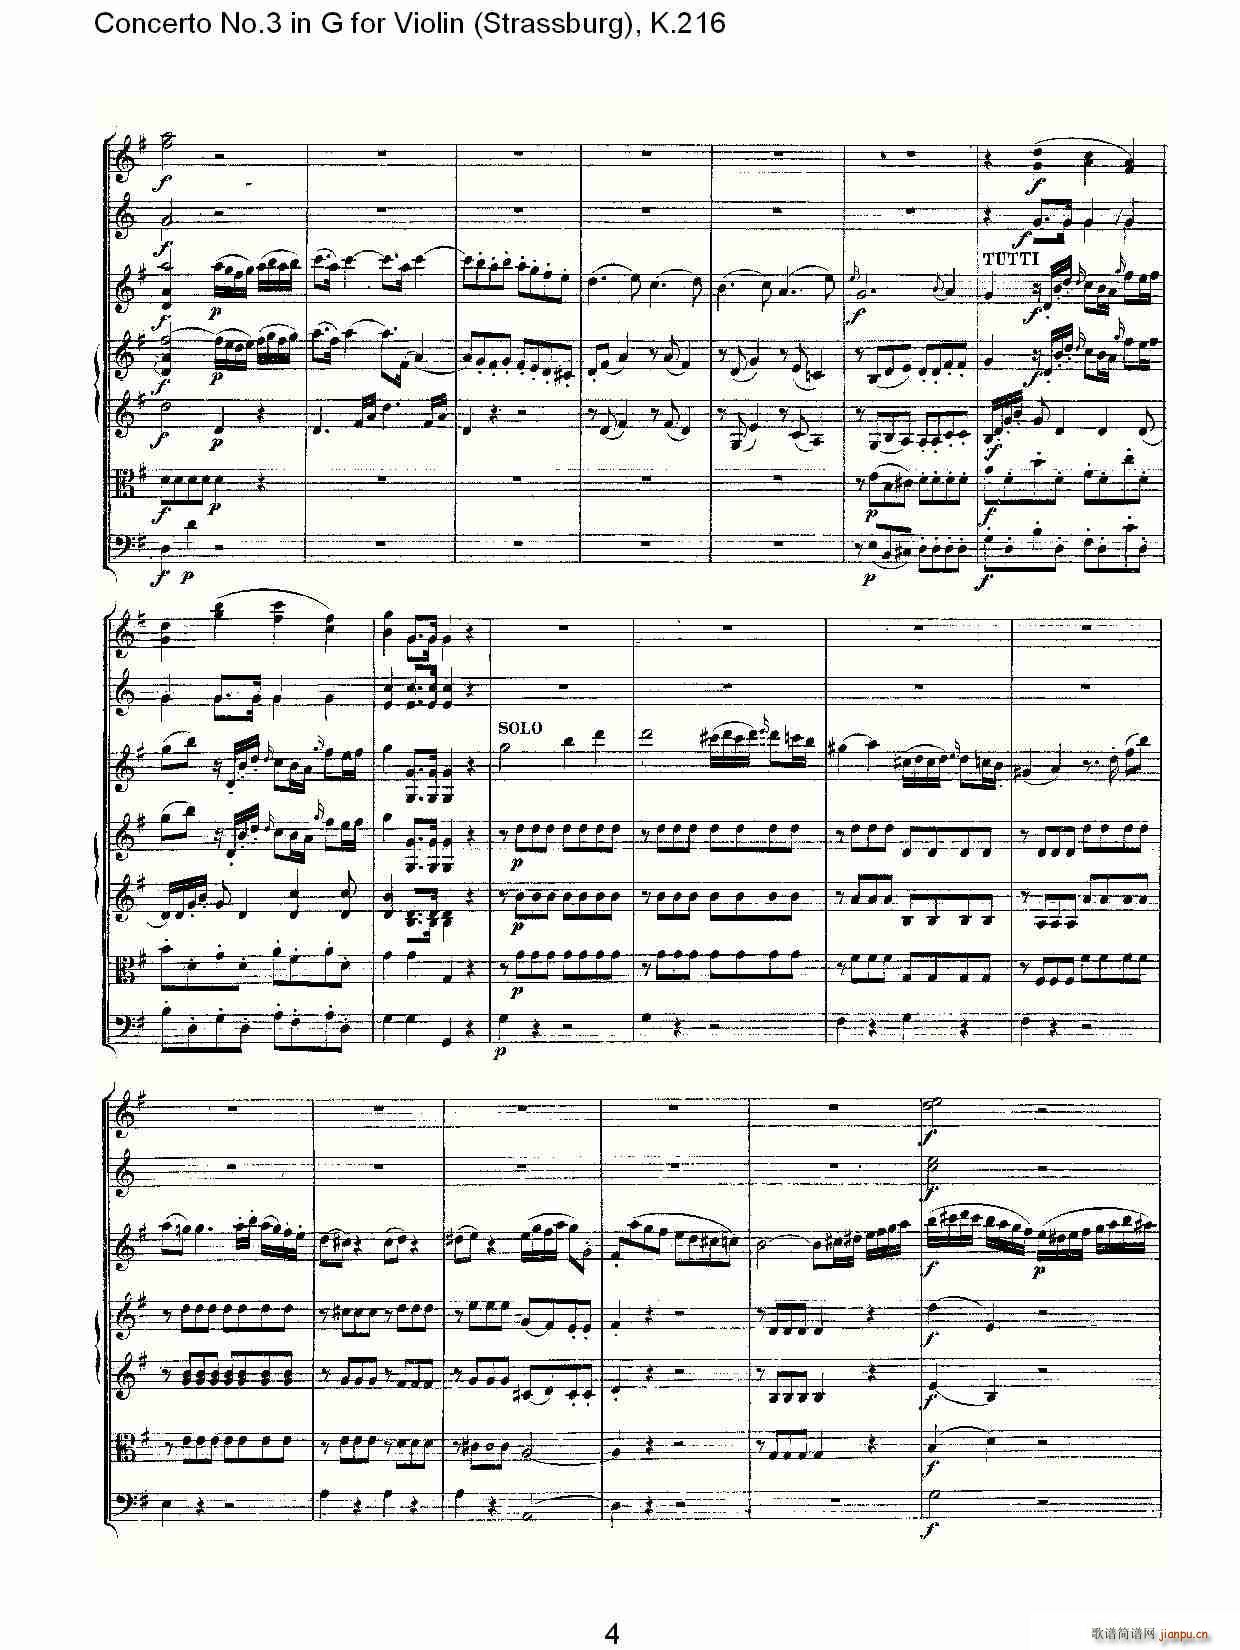 Concerto No.3 in G for Violin K.216 4